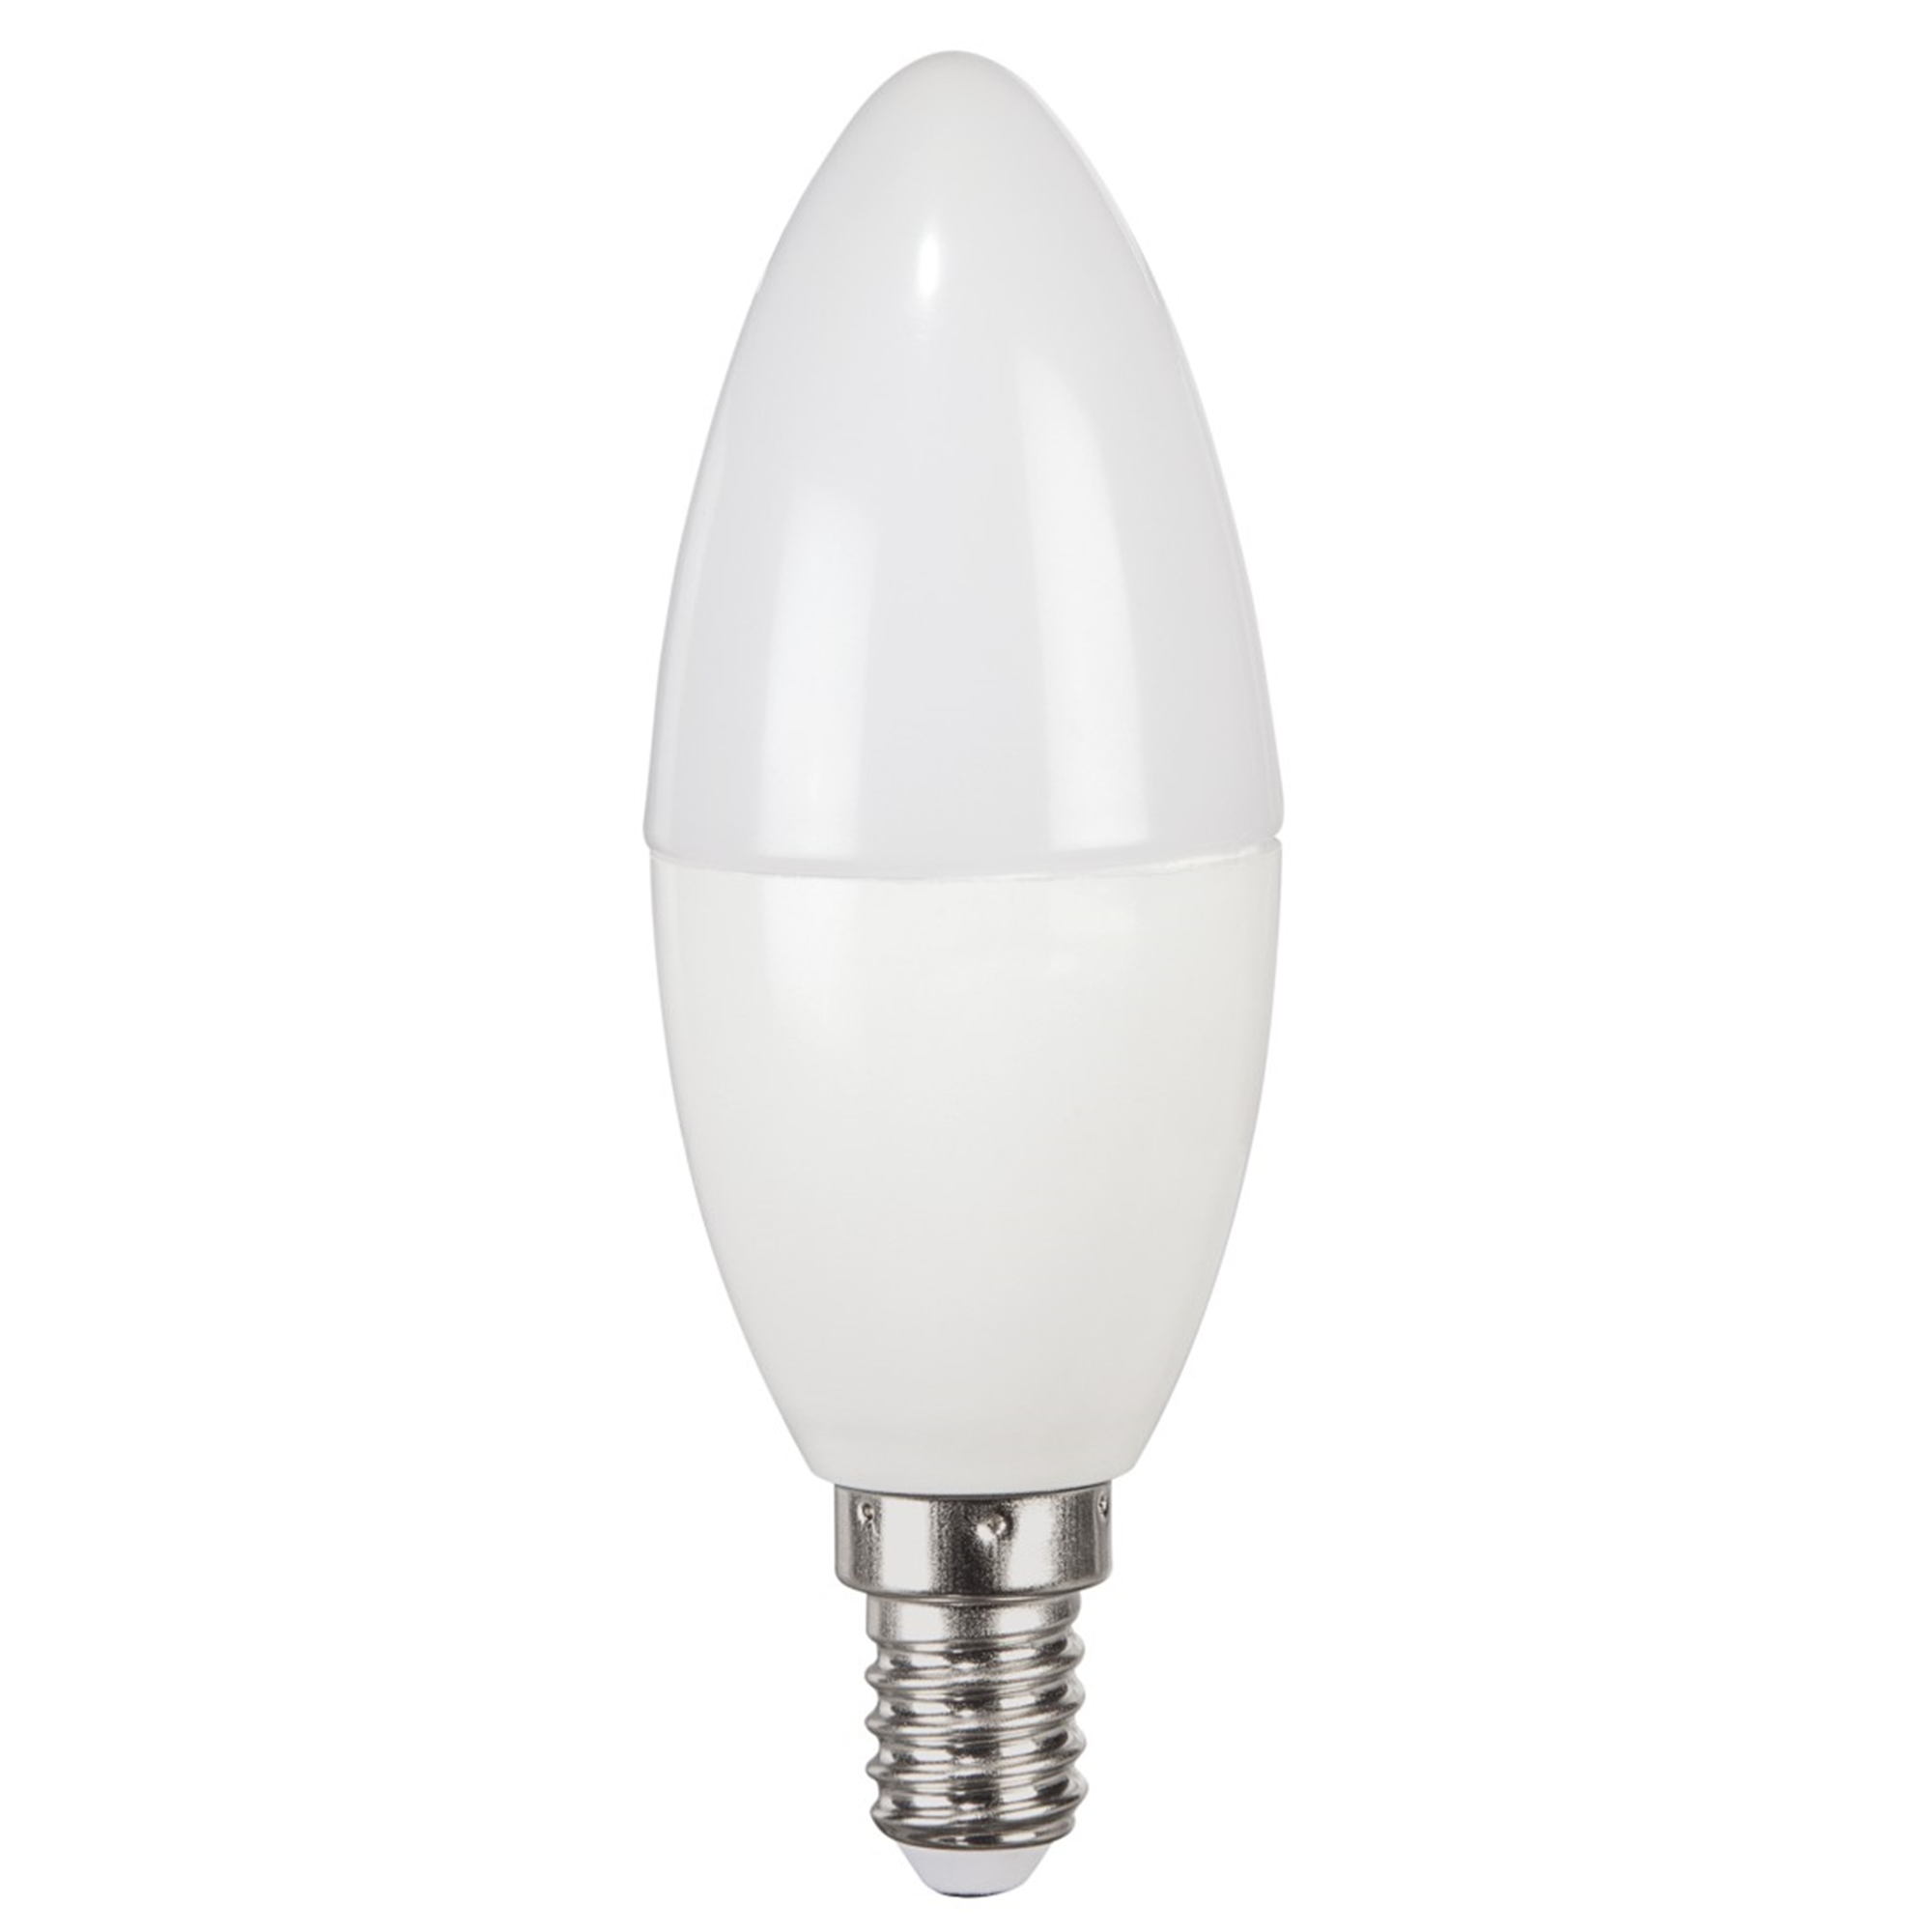 XAVAX E14, 806lm ersetzt 60W Warmweiß LED-Lampe E14